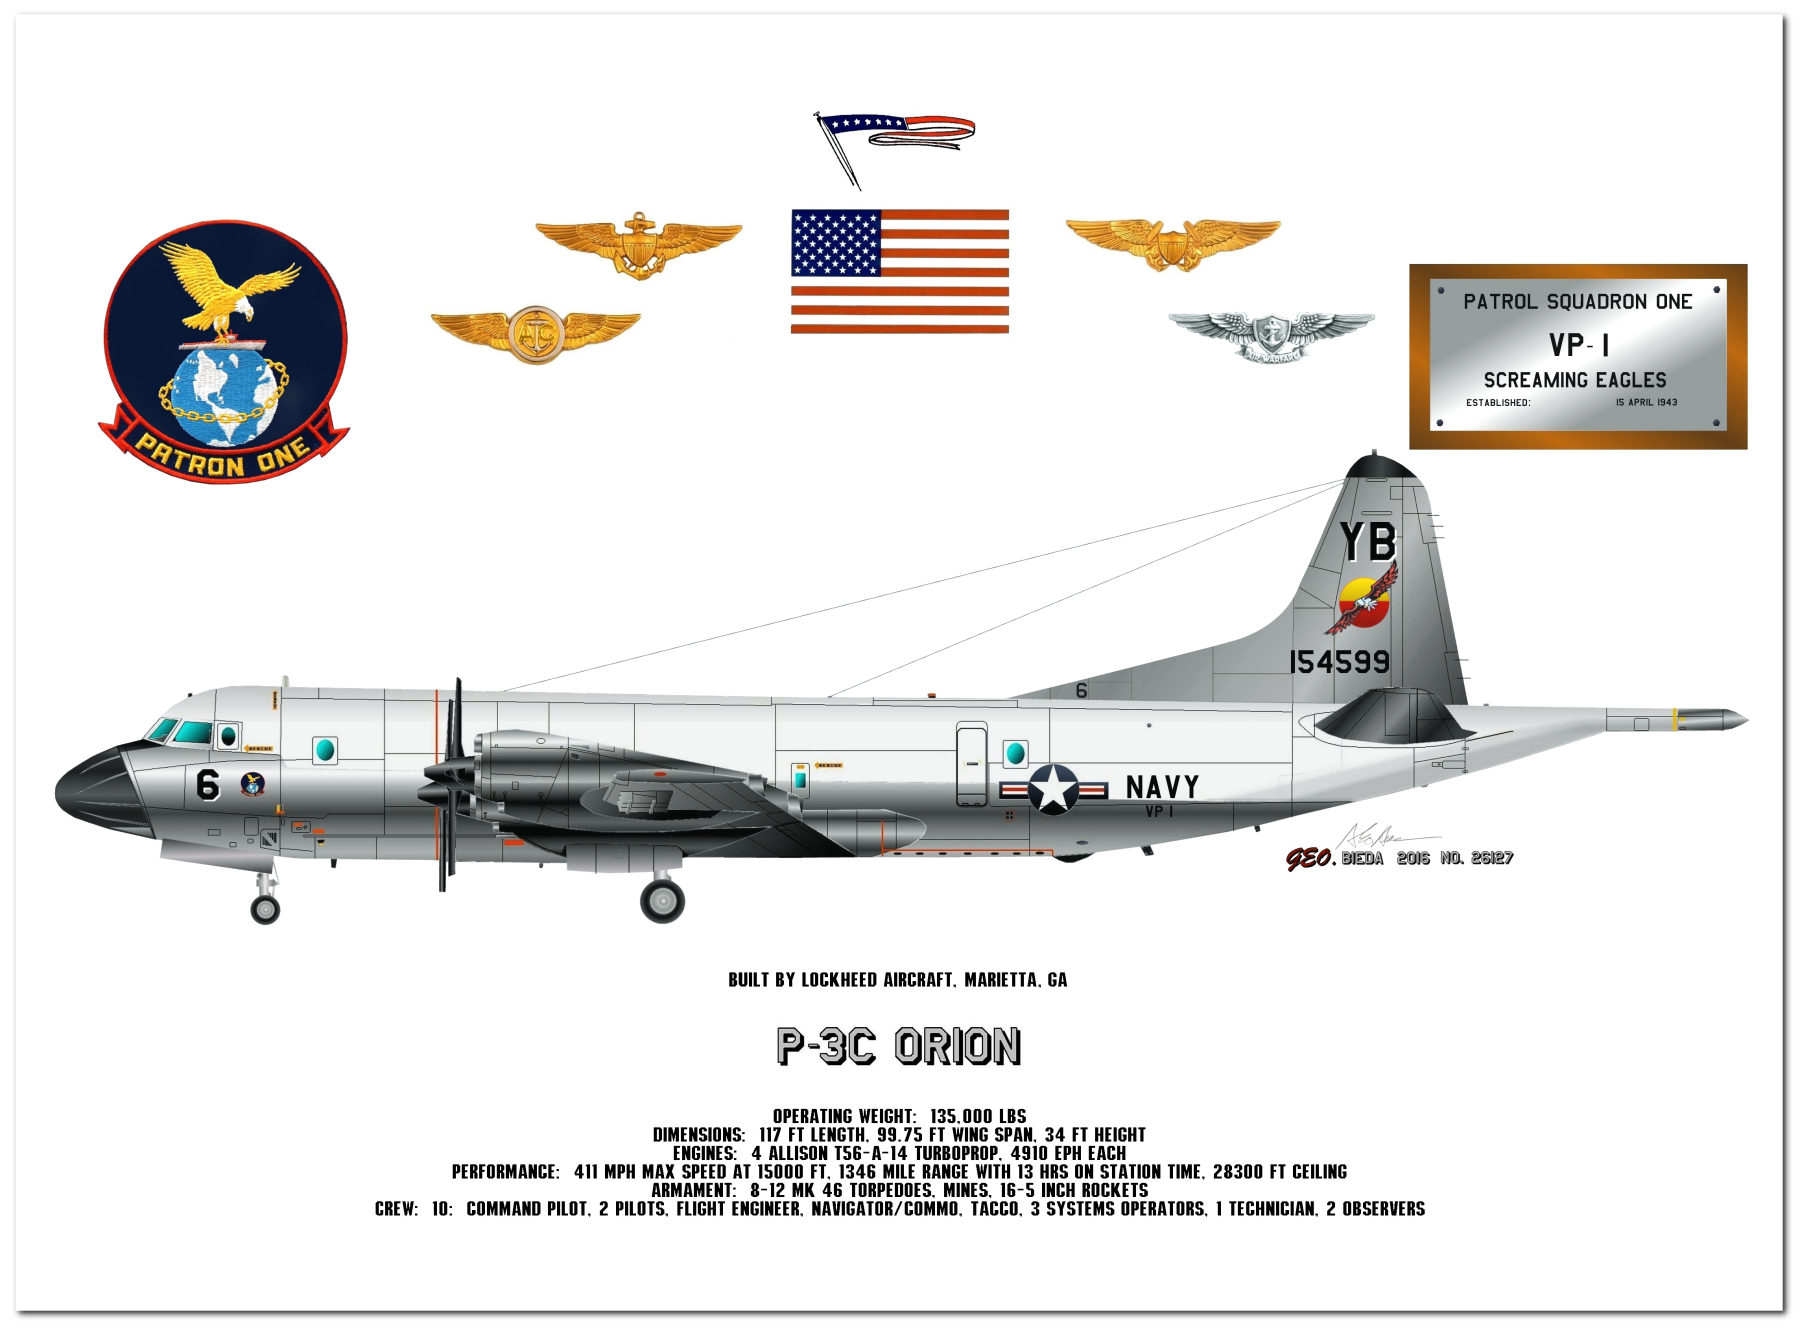 P-3 Orion Profile Drawings by George Bieda